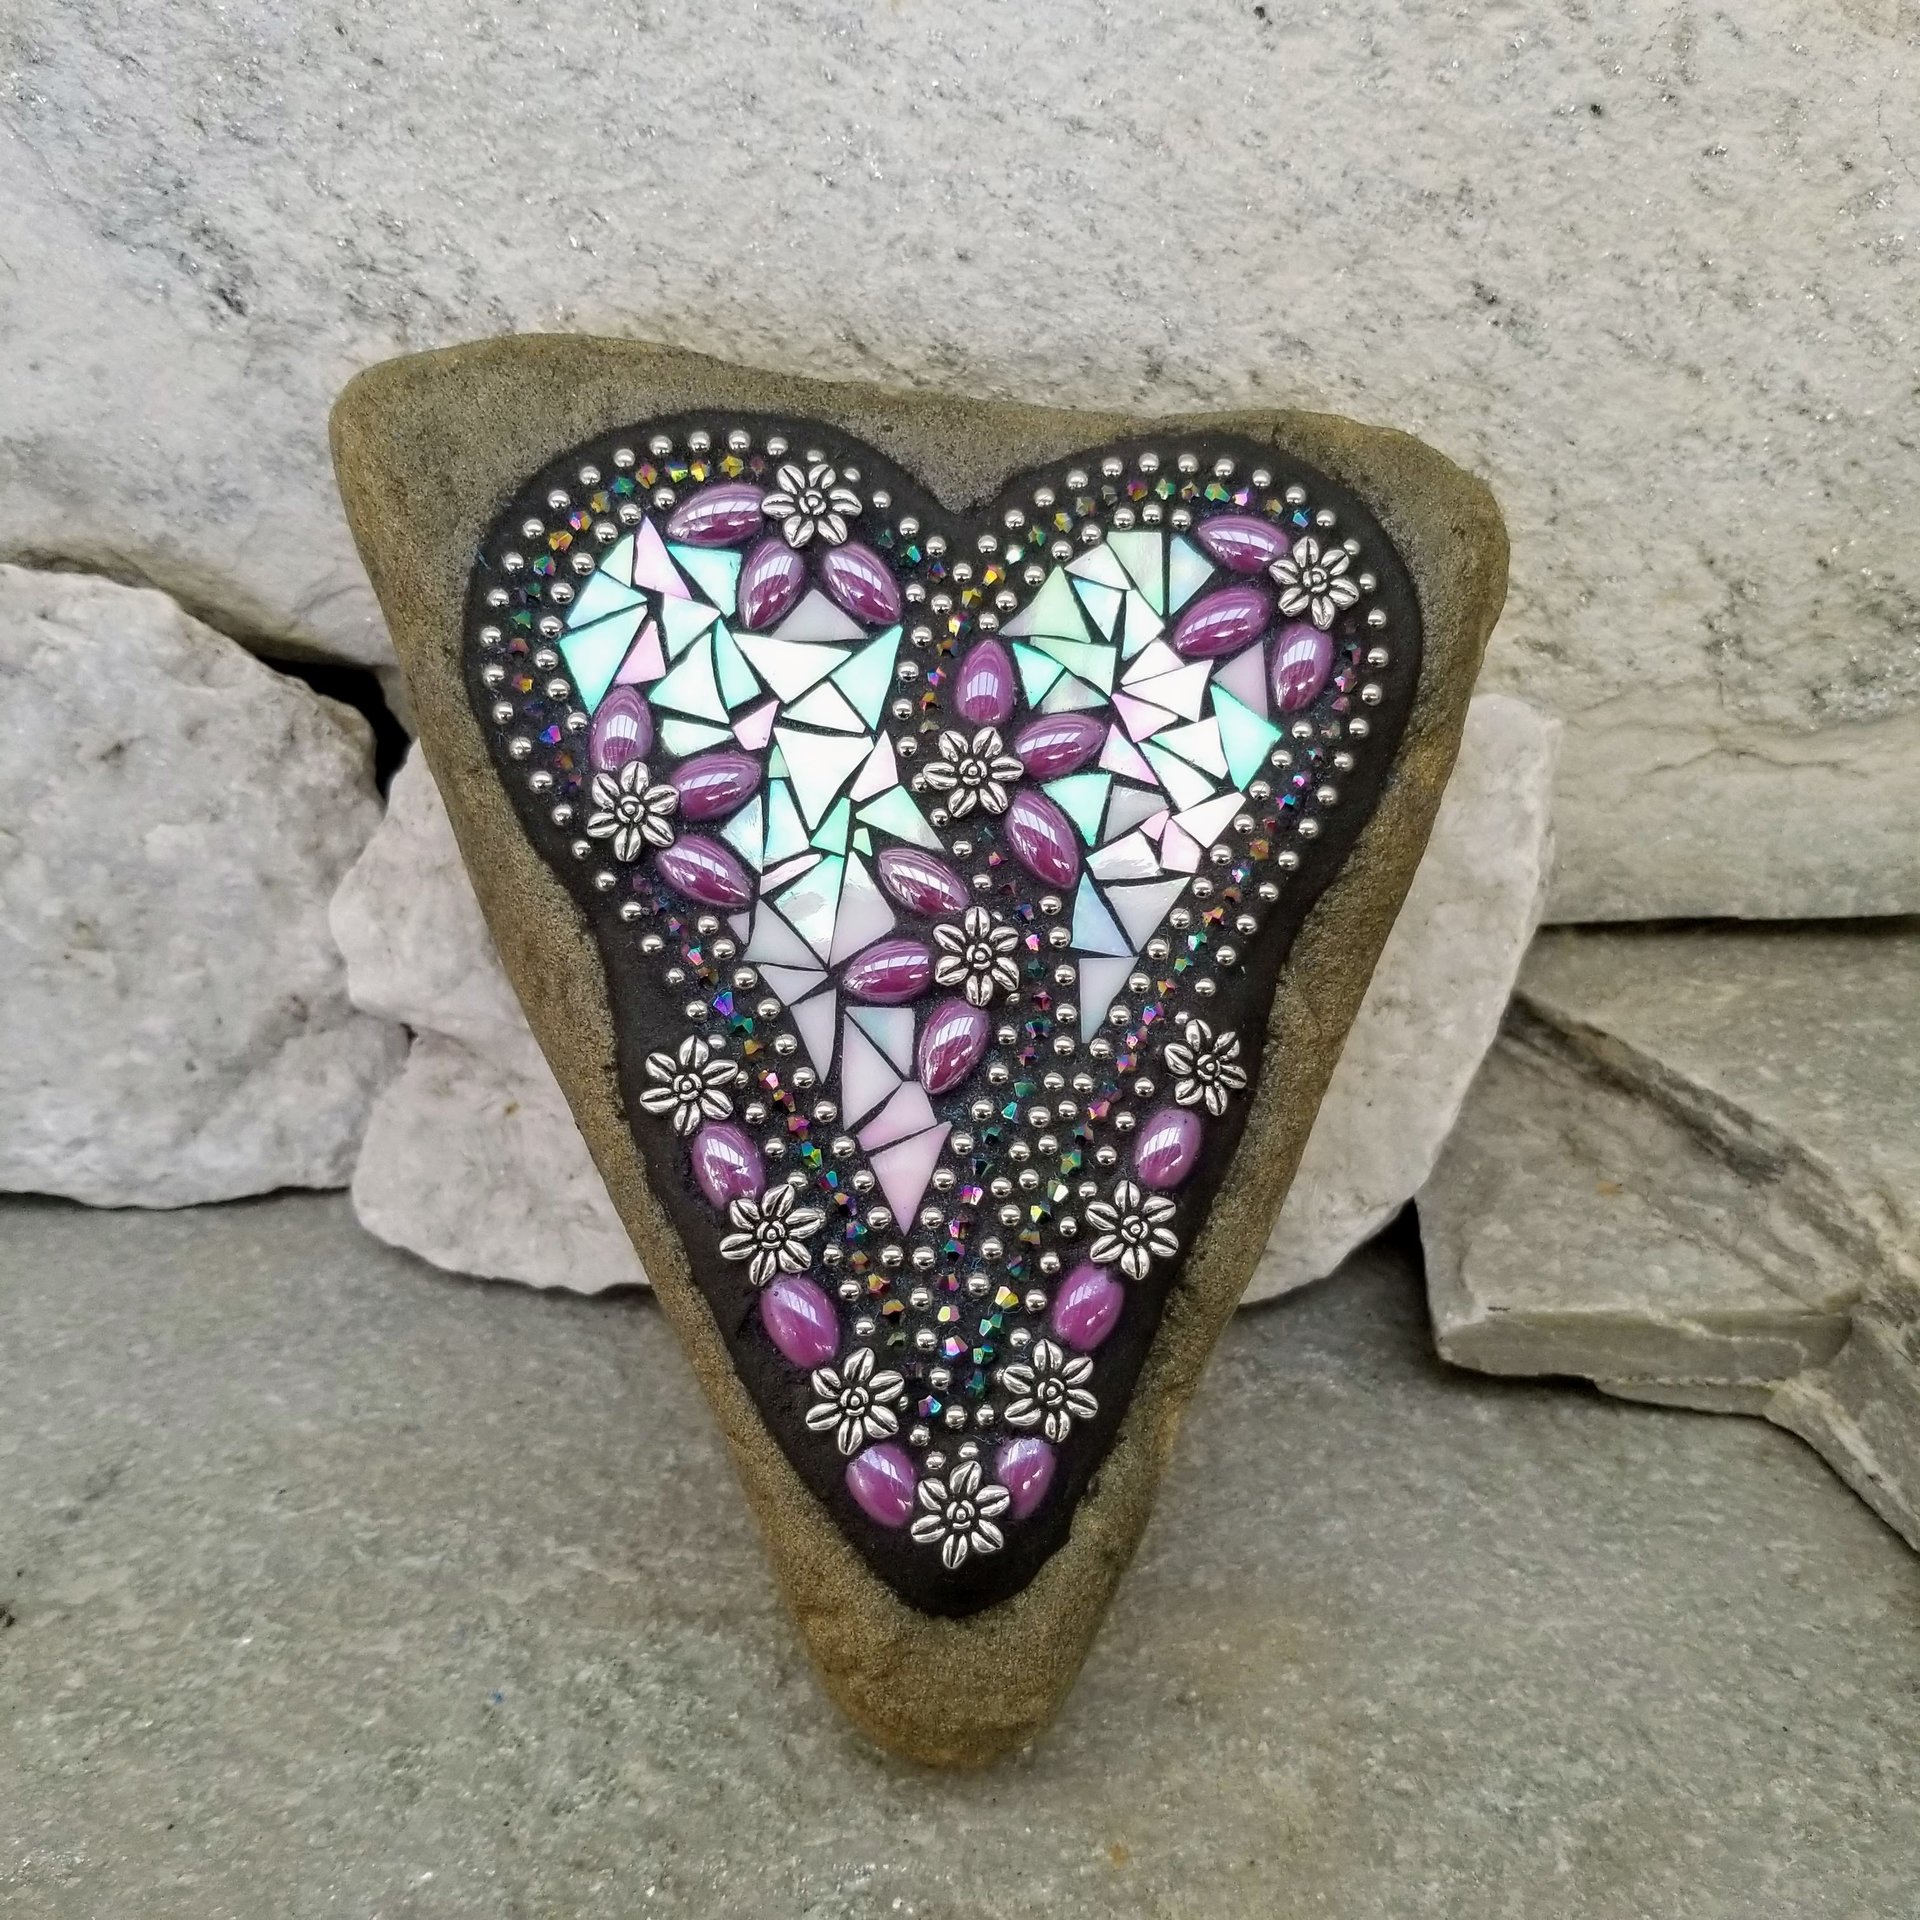 Iridescent Lavender Heart Garden Stone, Mosaic, Garden Decor